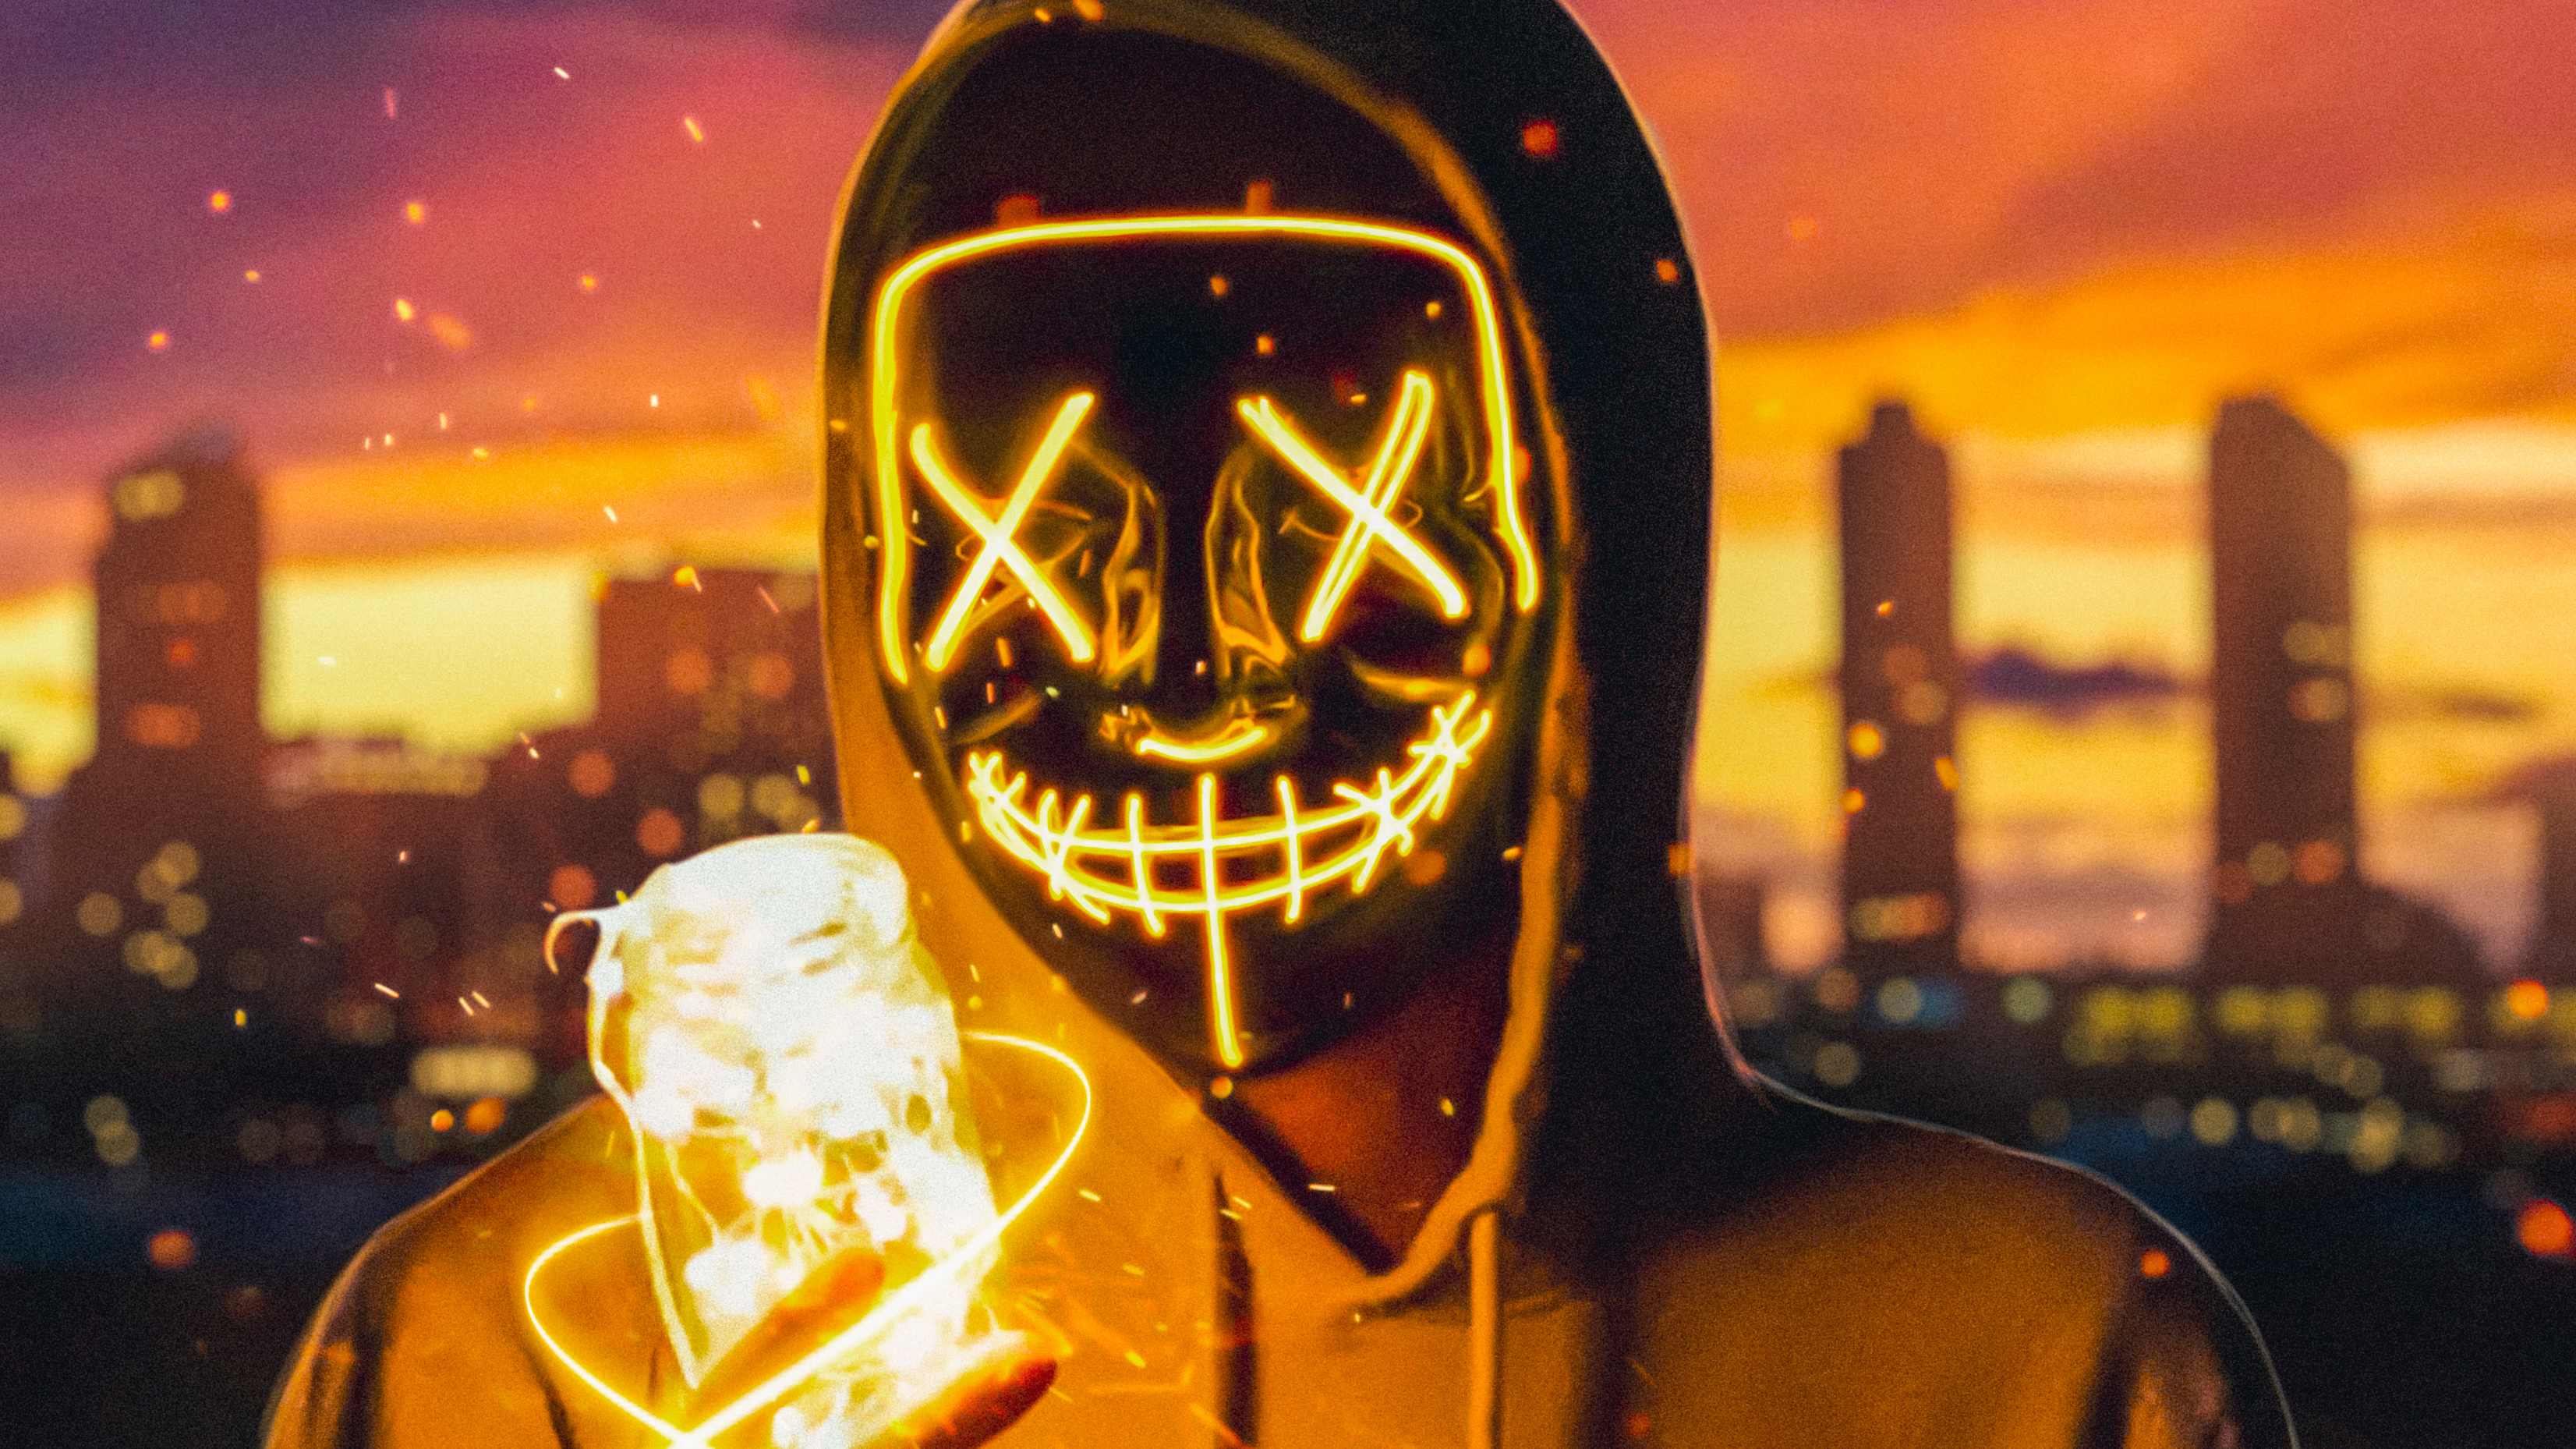 General 3304x1858 mask masked neon fire closeup digital art